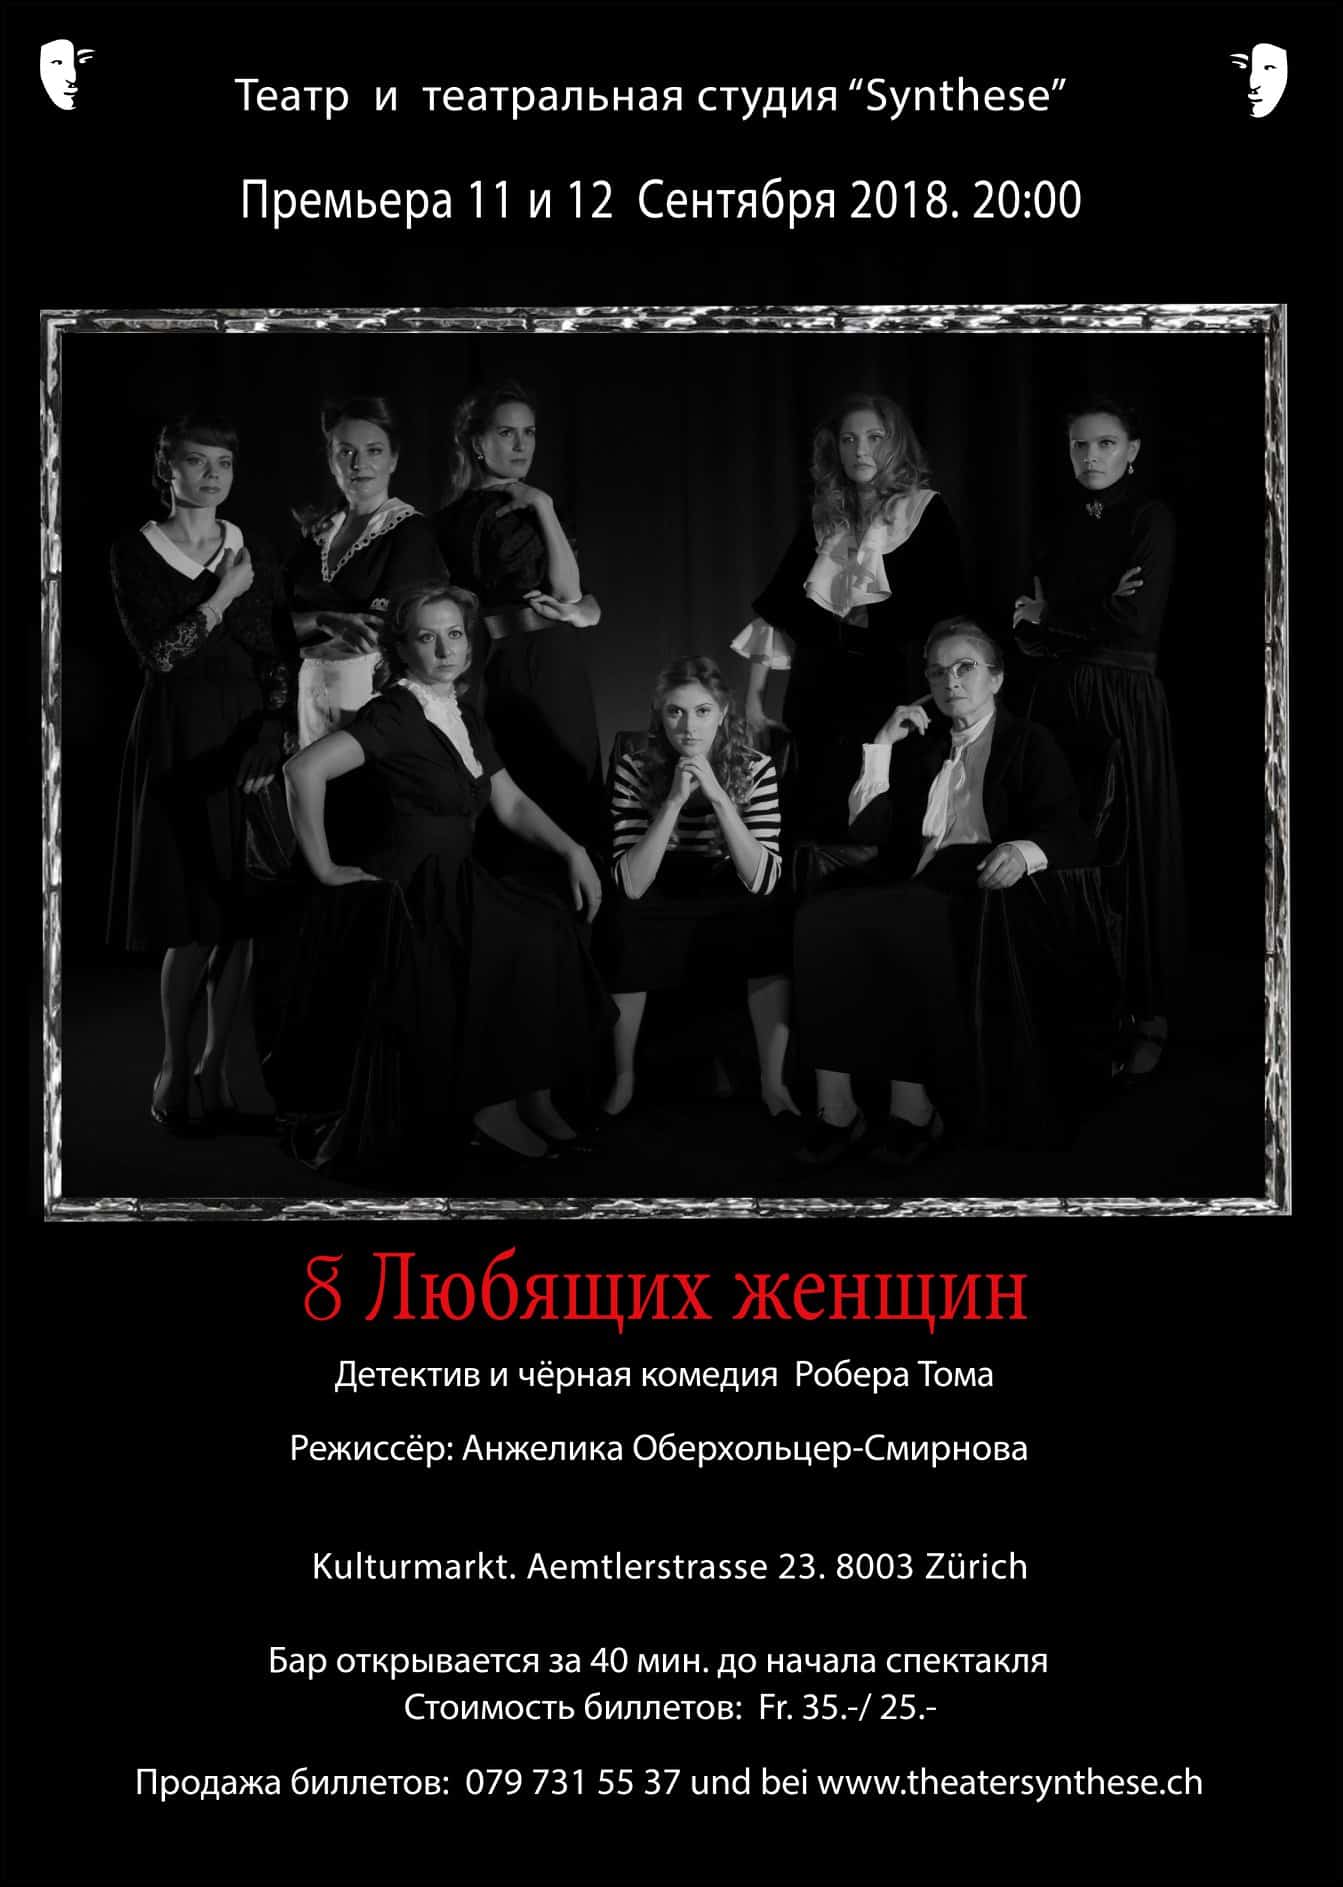 "8 любящих женщин". Премьера в Театре "Synthese"